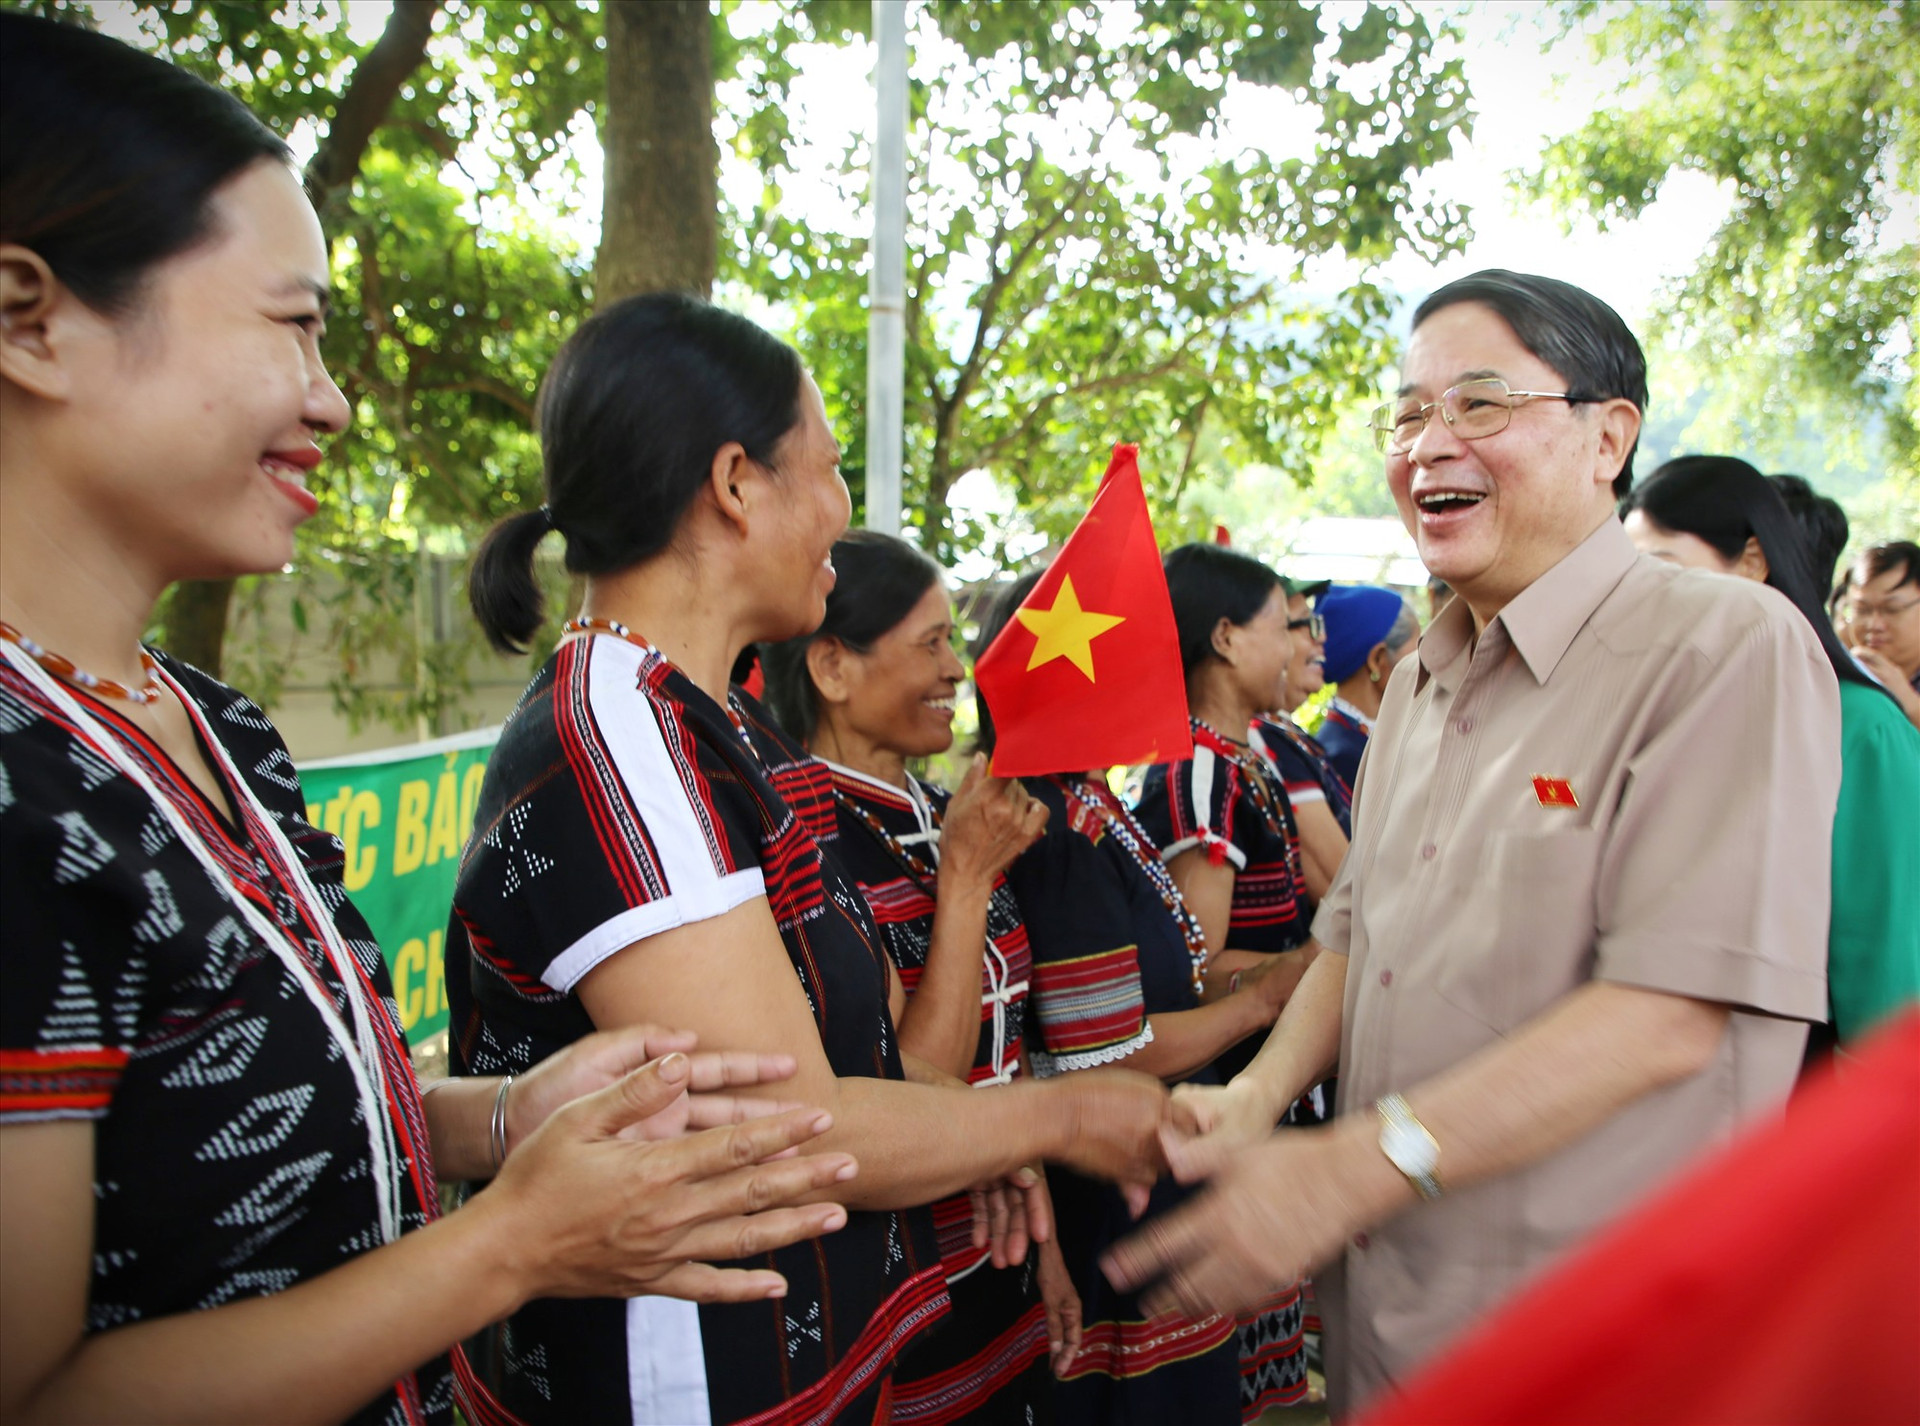 Phó Chủ tịch Quốc hội Nguyễn Đức Hải vui cùng ngày hội Đại đoàn kết với đồng bào Cơ Tu. Ảnh: ALĂNG NGƯỚC